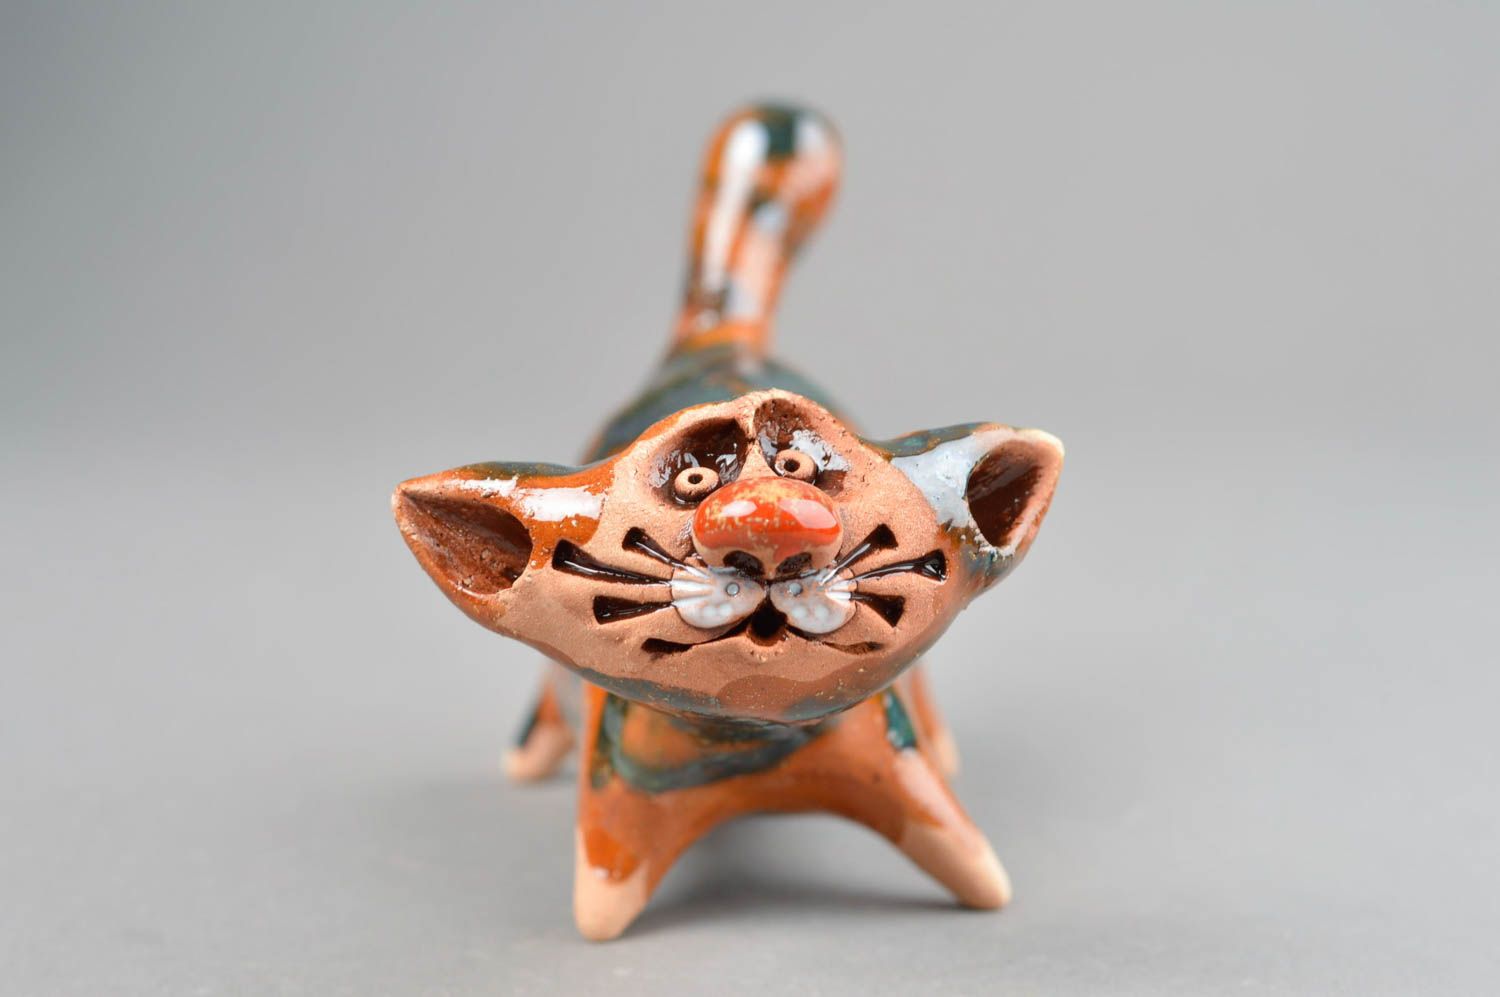 Handmade ceramic figurines ceramic animals cat decor gift ideas for women photo 3